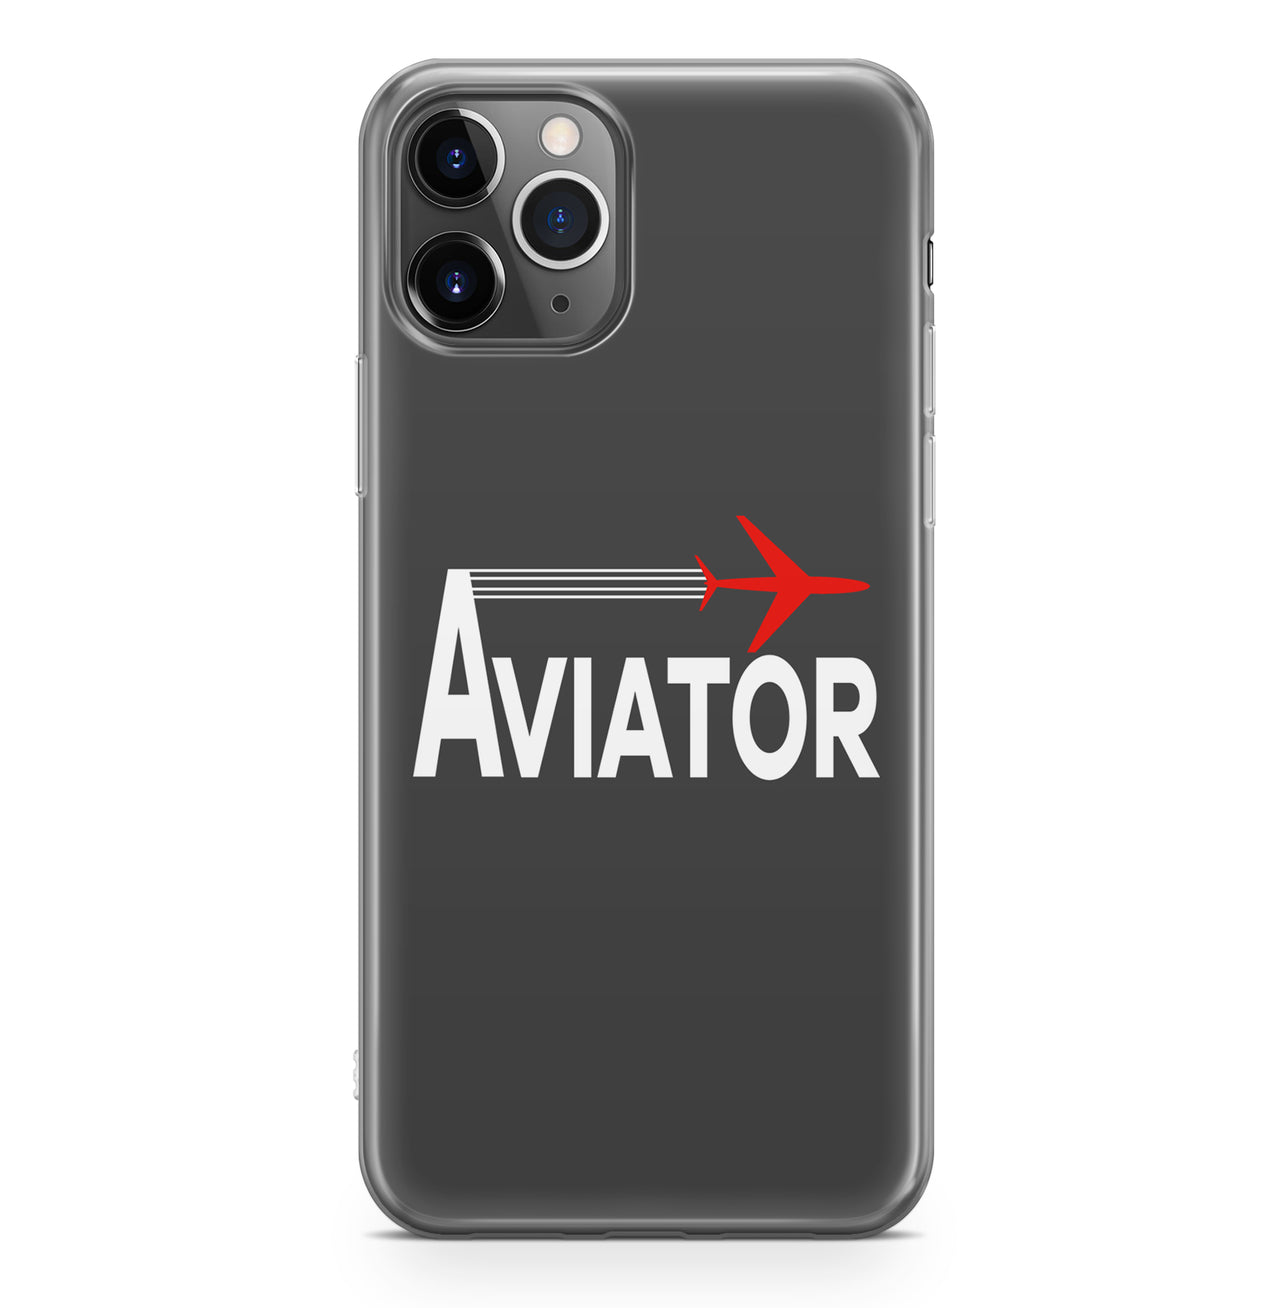 Aviator Designed iPhone Cases